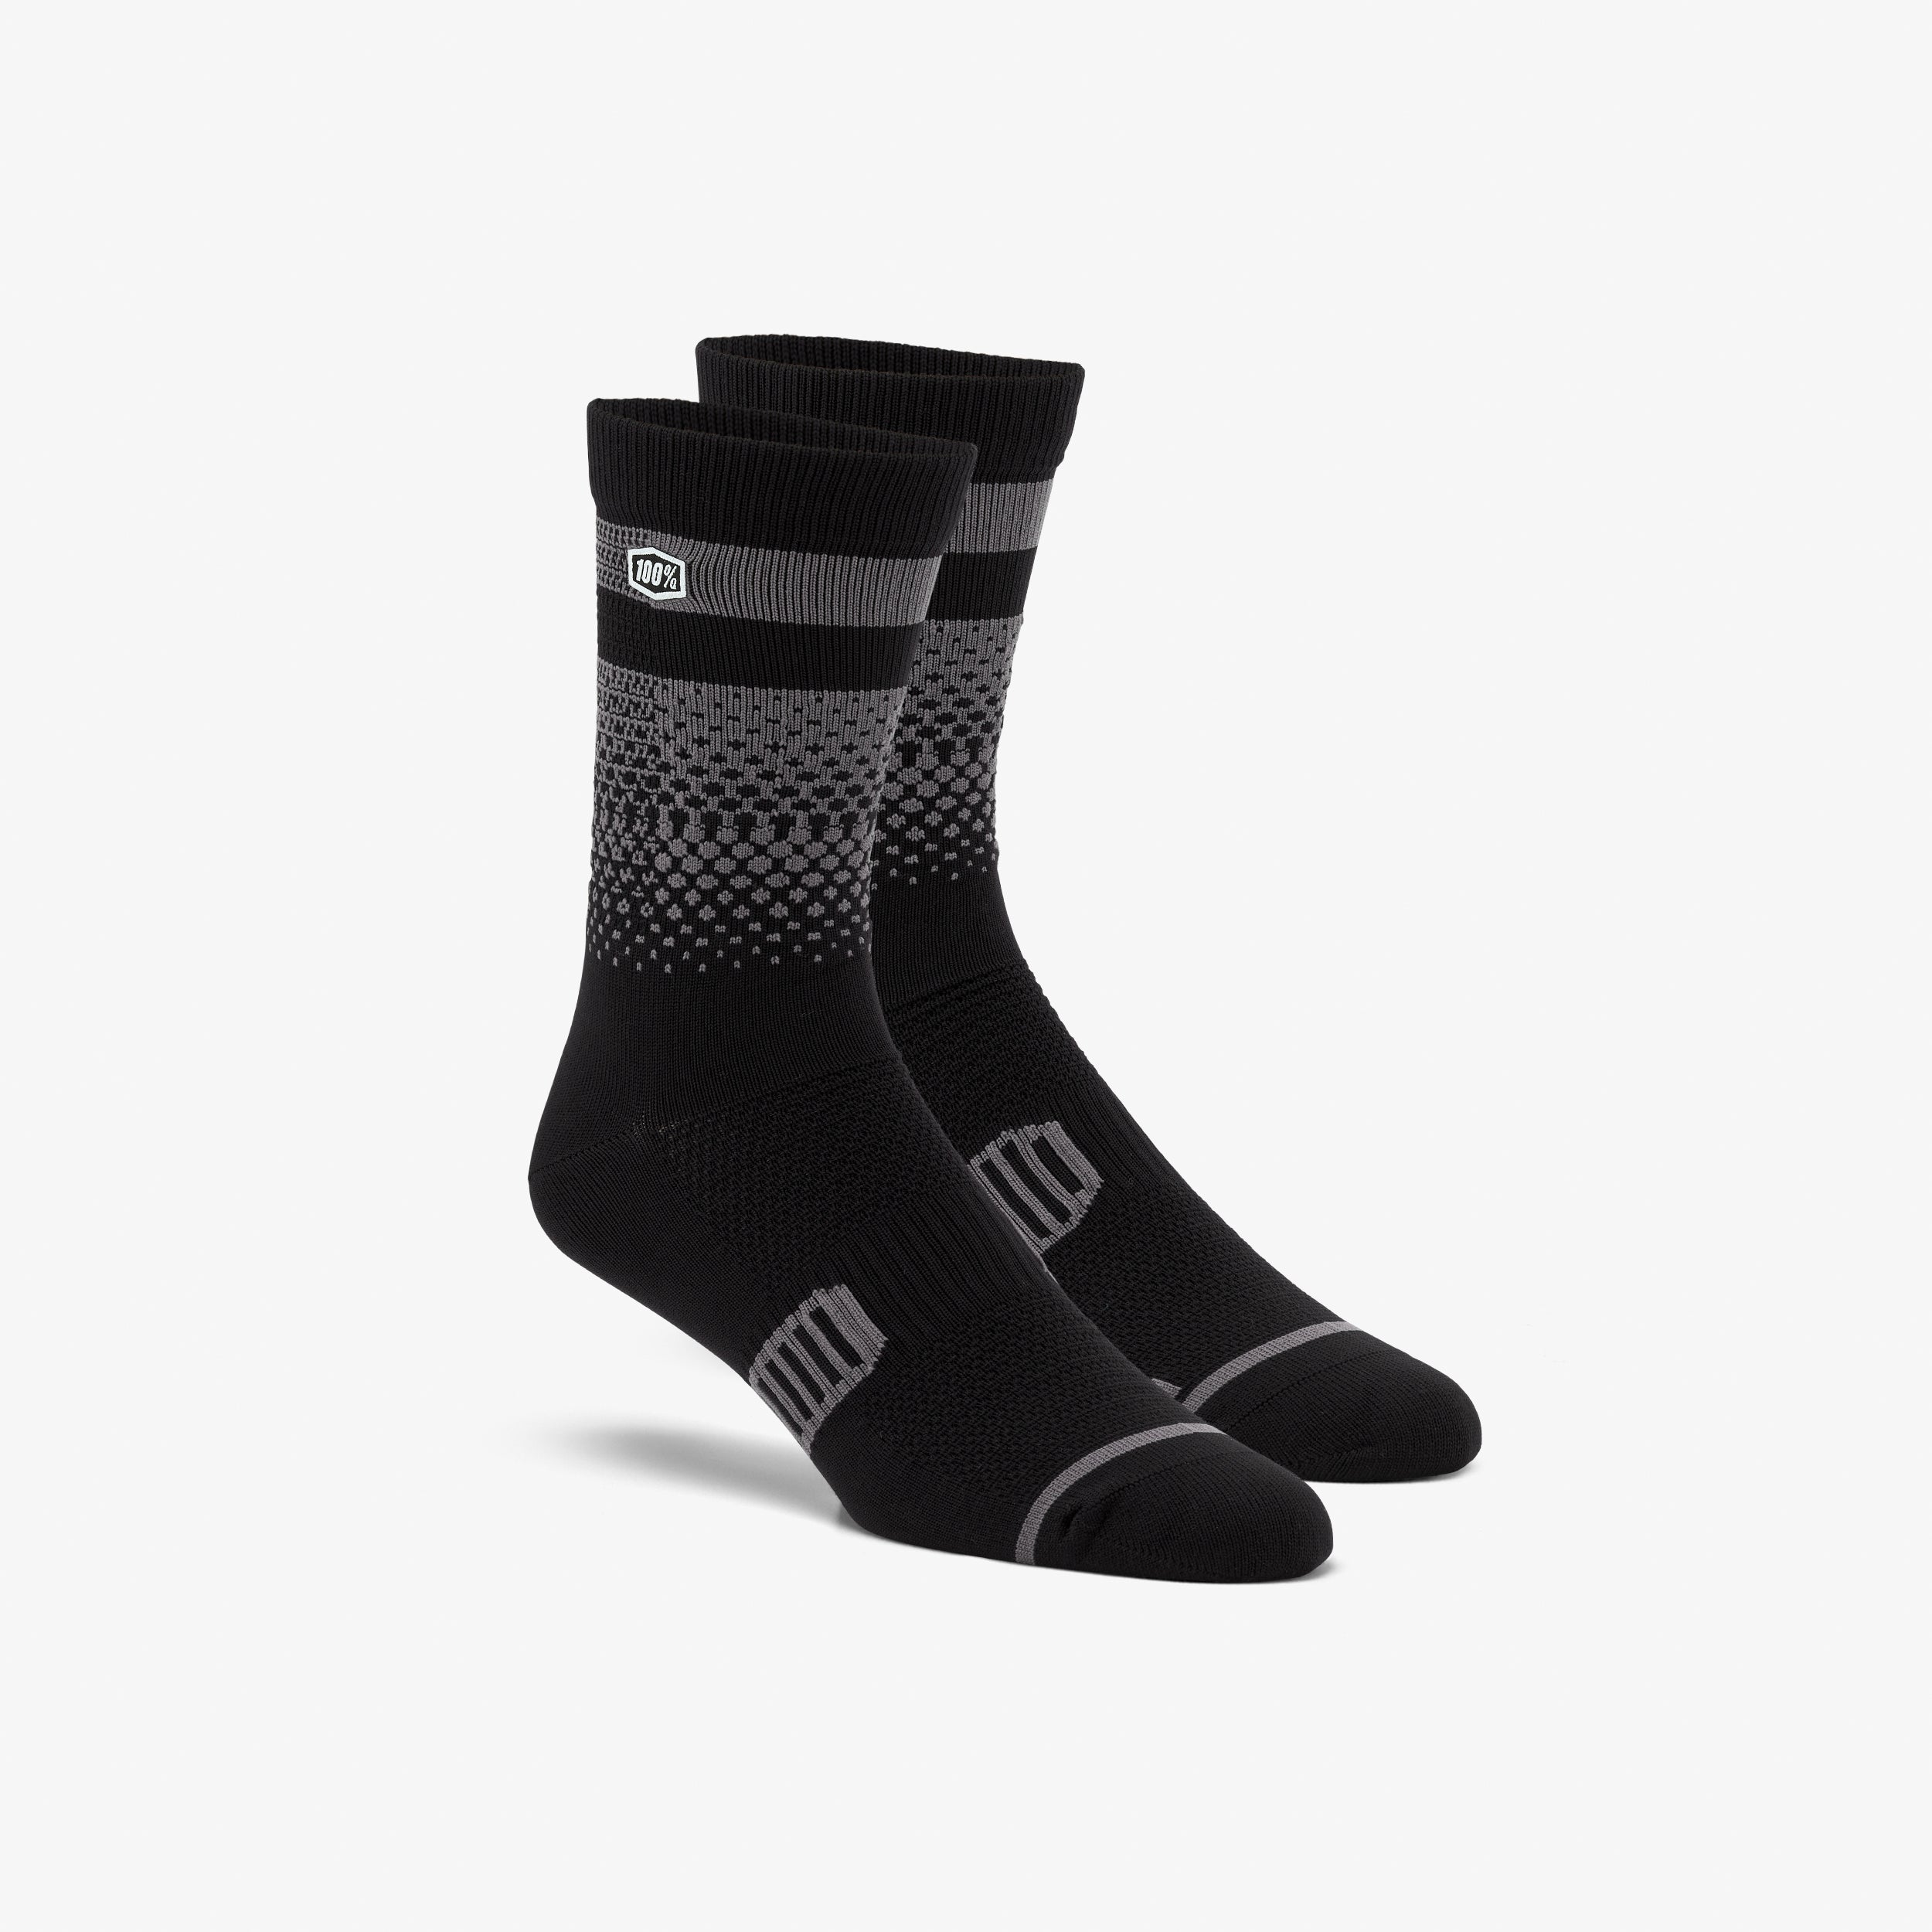 ADVOCATE BLUR Performance MTB Socks Black/Charcoal